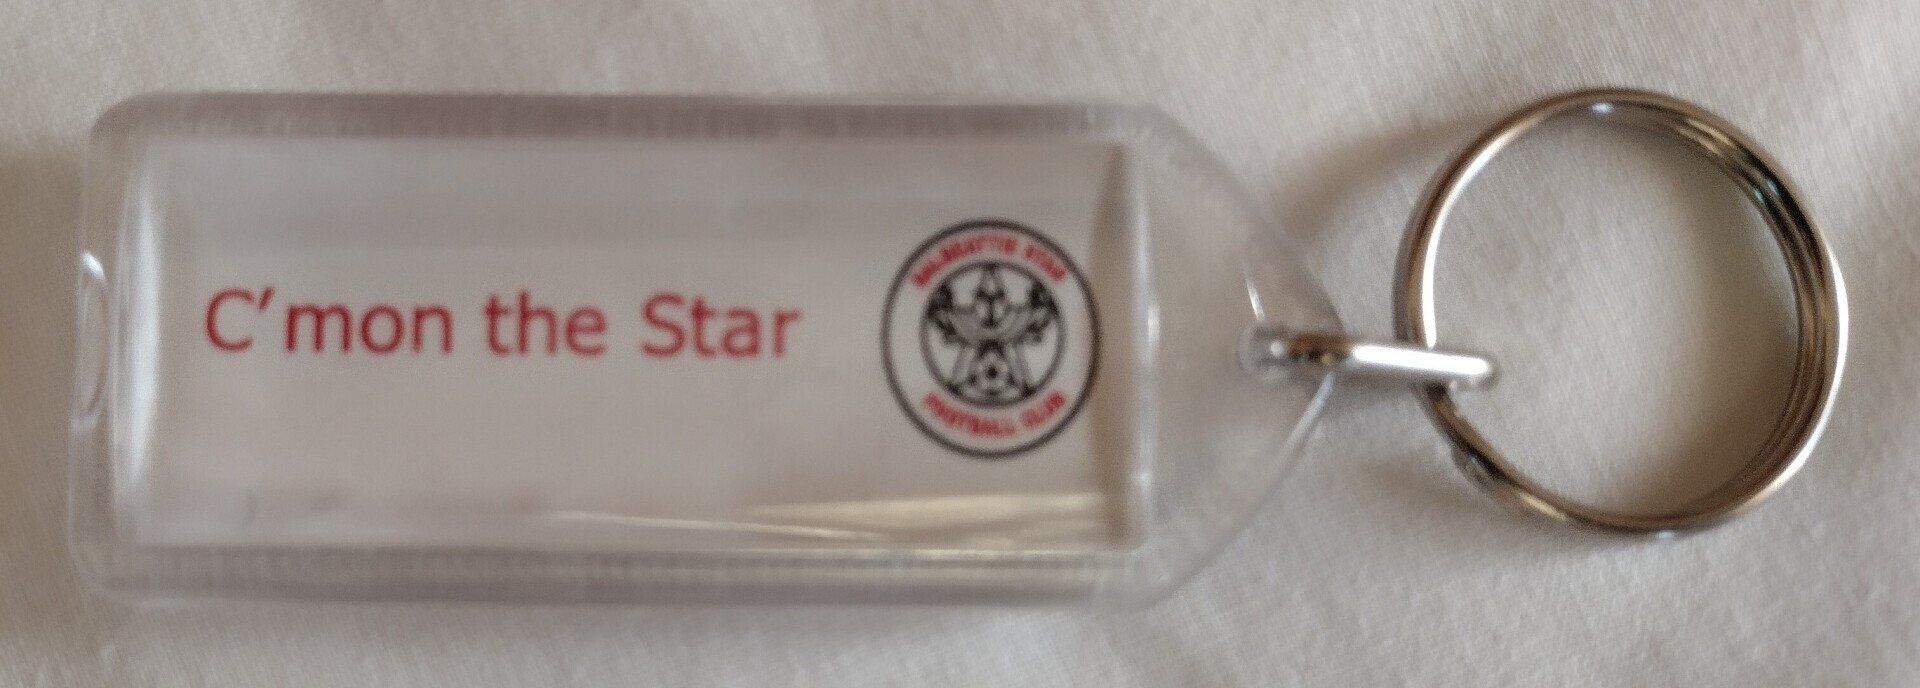 Dalbeattie Star FC Mugs and Key Rings